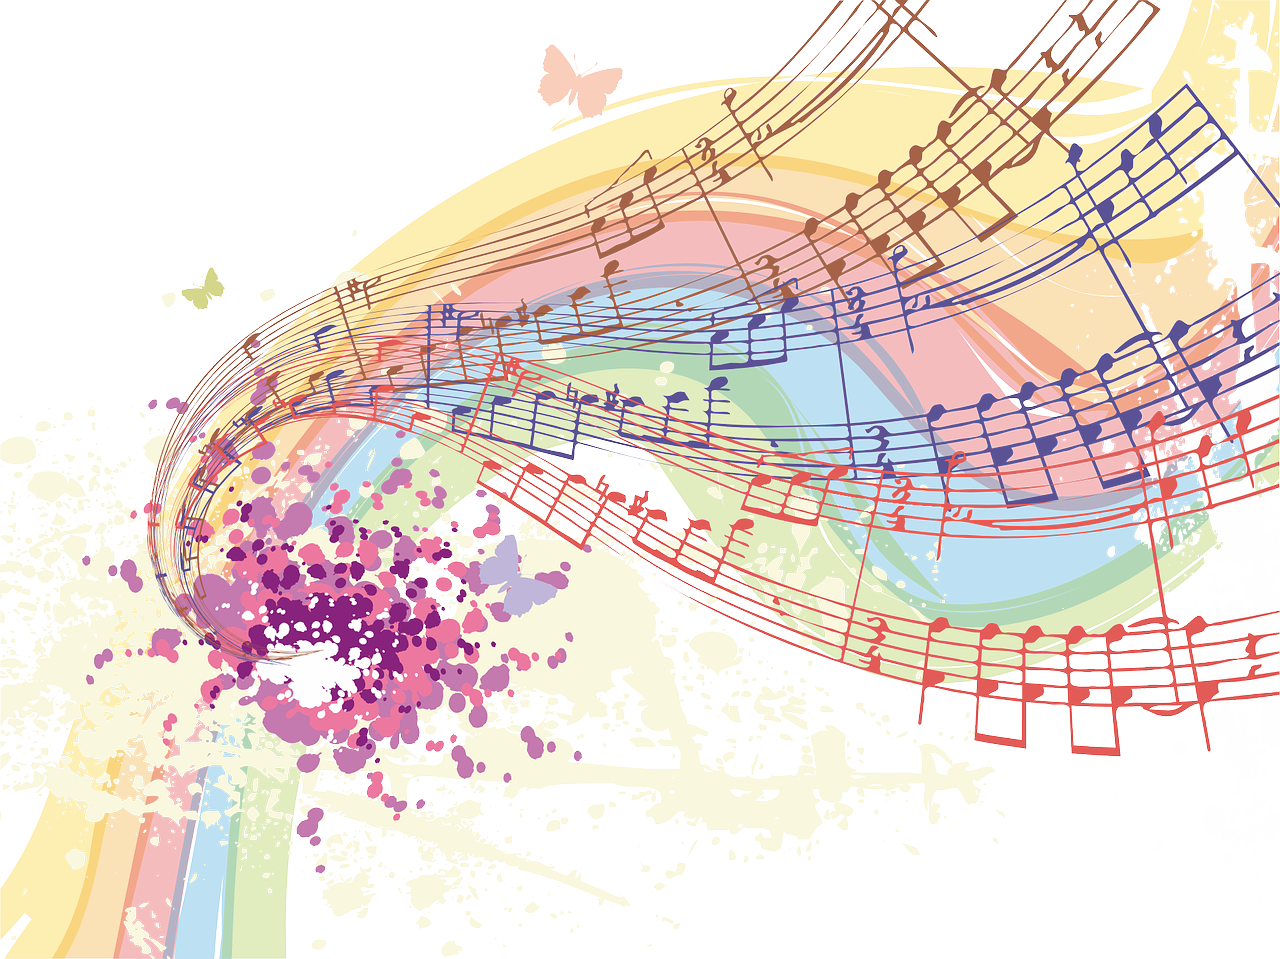 Colorful music score